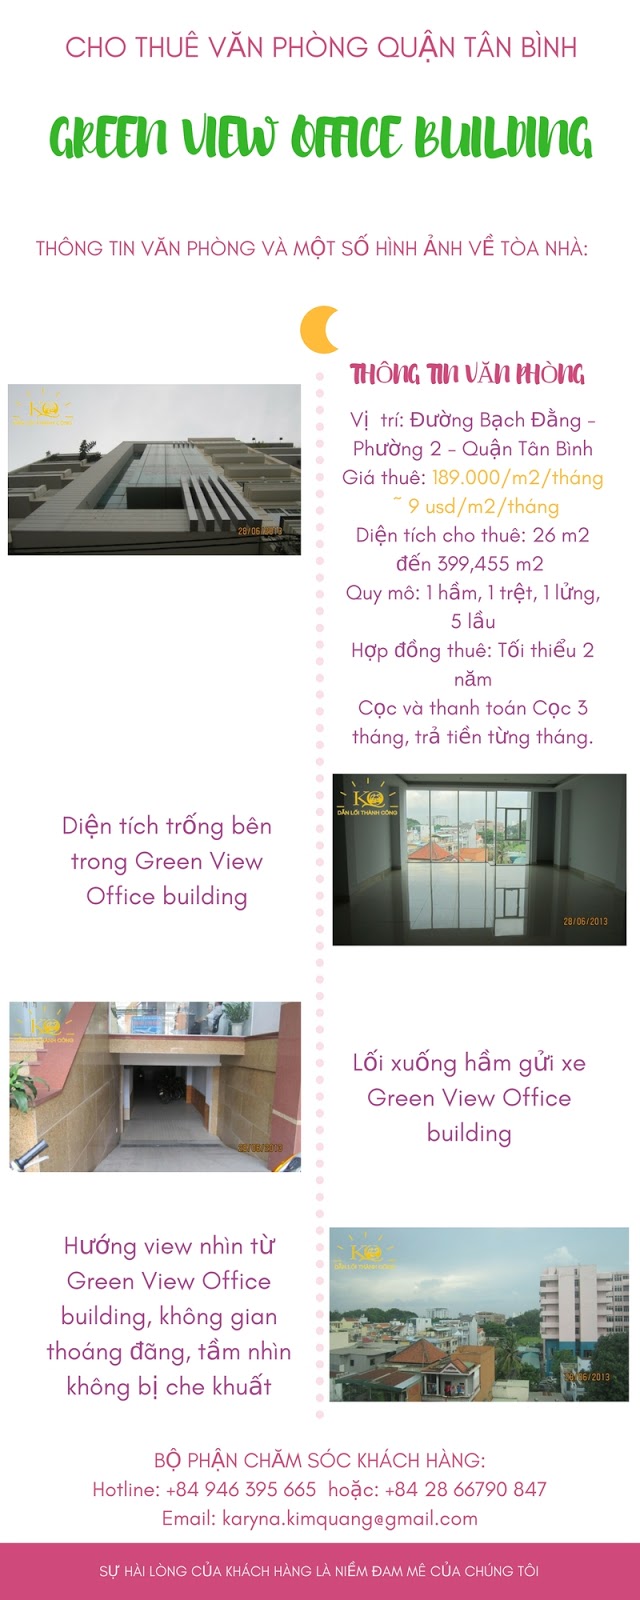 Green View Building, Cao Ốc Green View quận Tân Bình